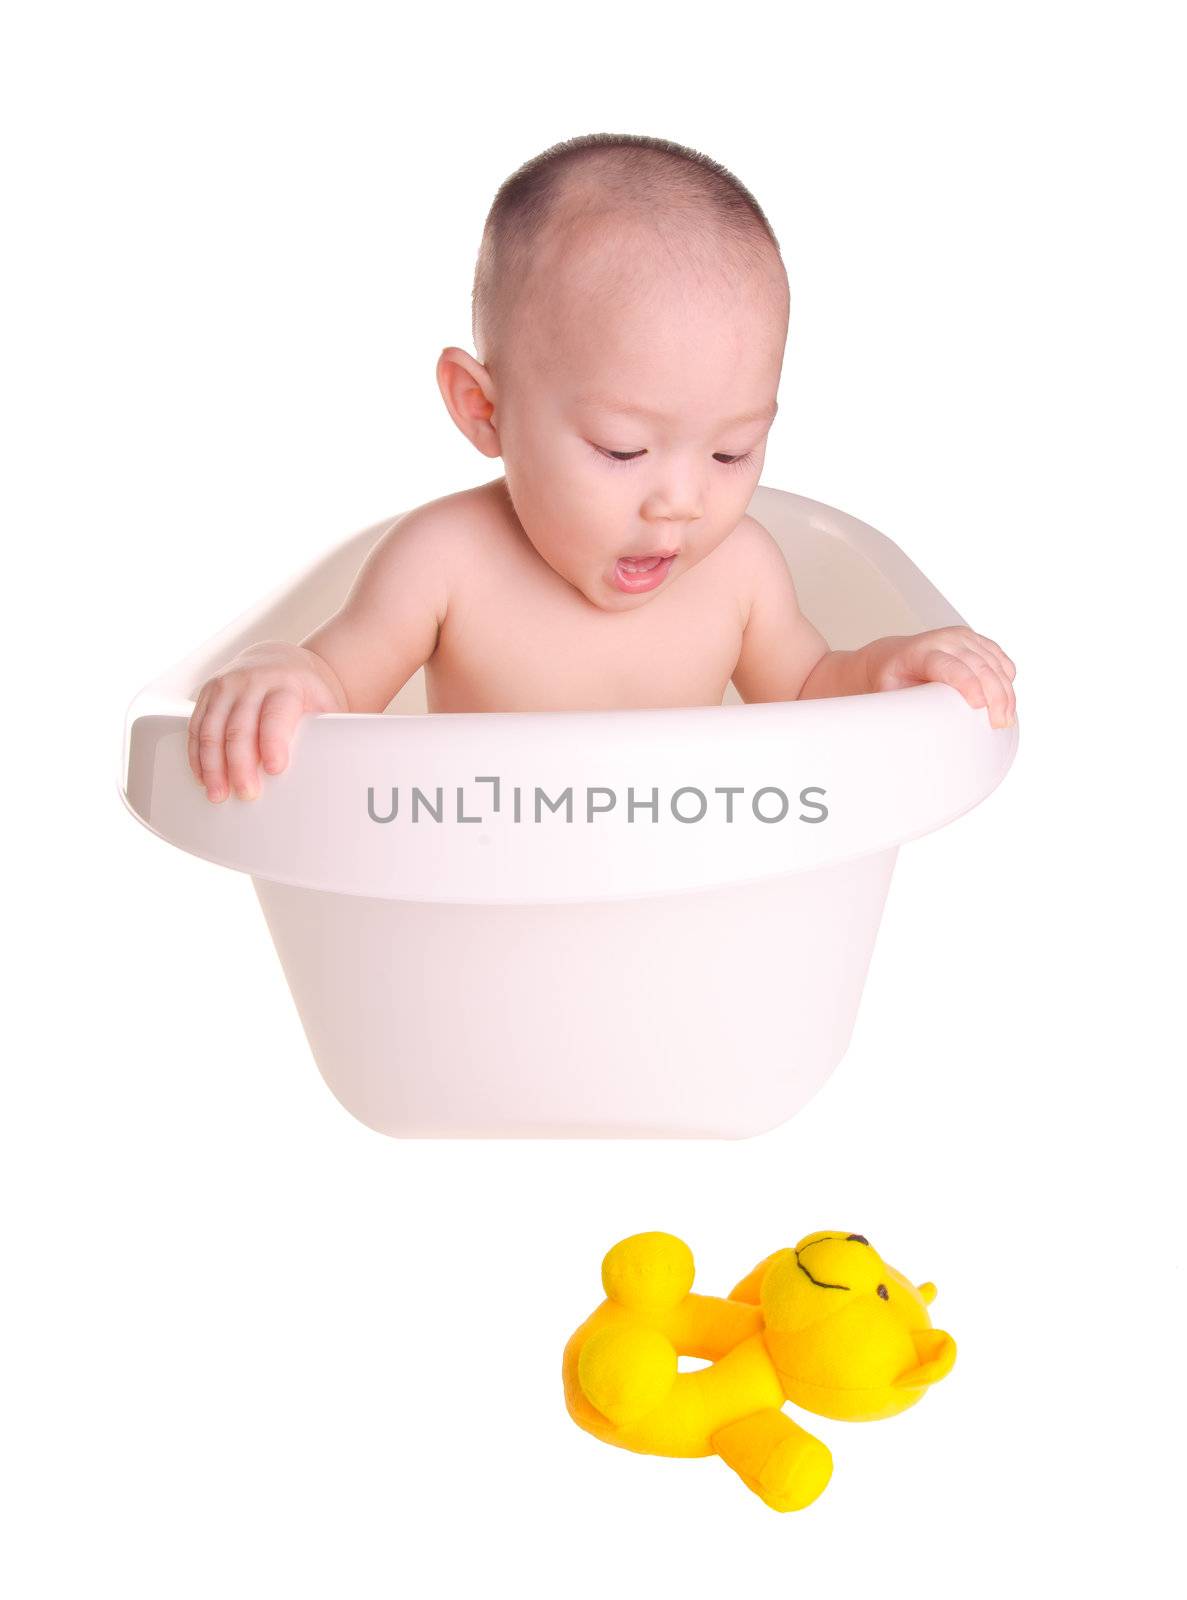 baby boy, asian Cute baby boy  having bath in tub